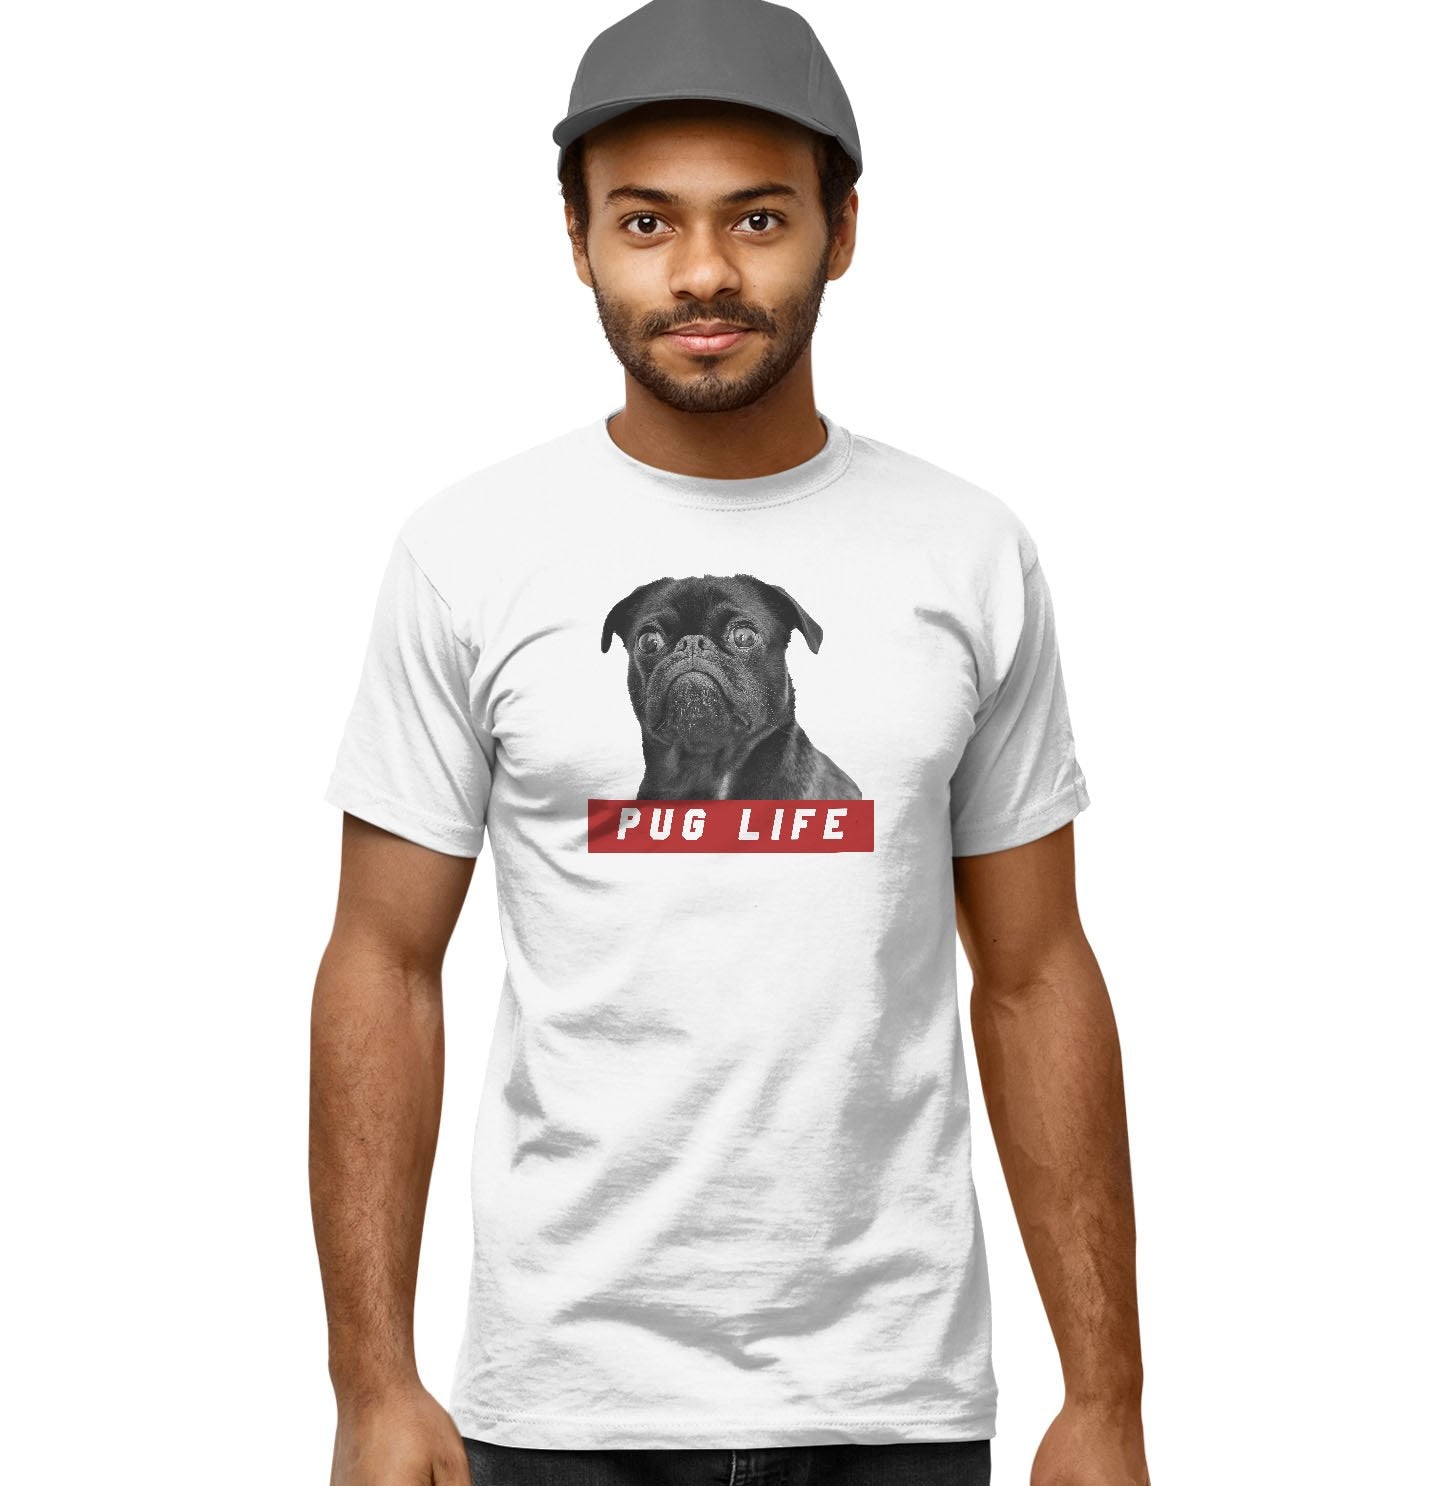 Pug Life - Adult Unisex T-Shirt